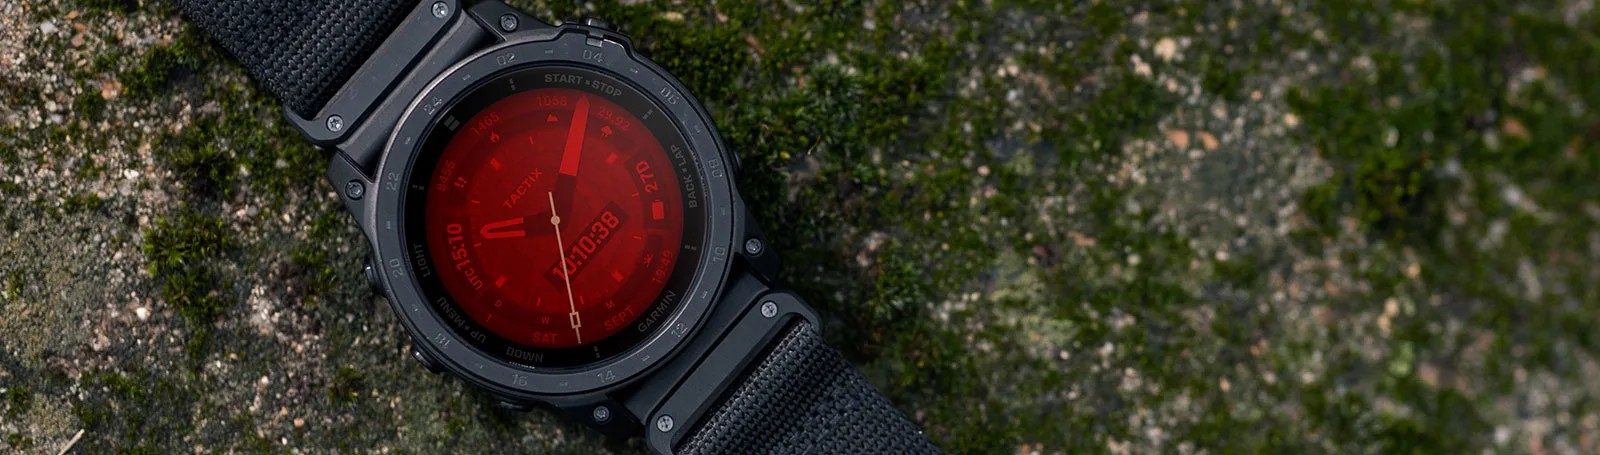 компанія garmin представляє новий тактичний смарт-годинник tactix 7 amoled edition